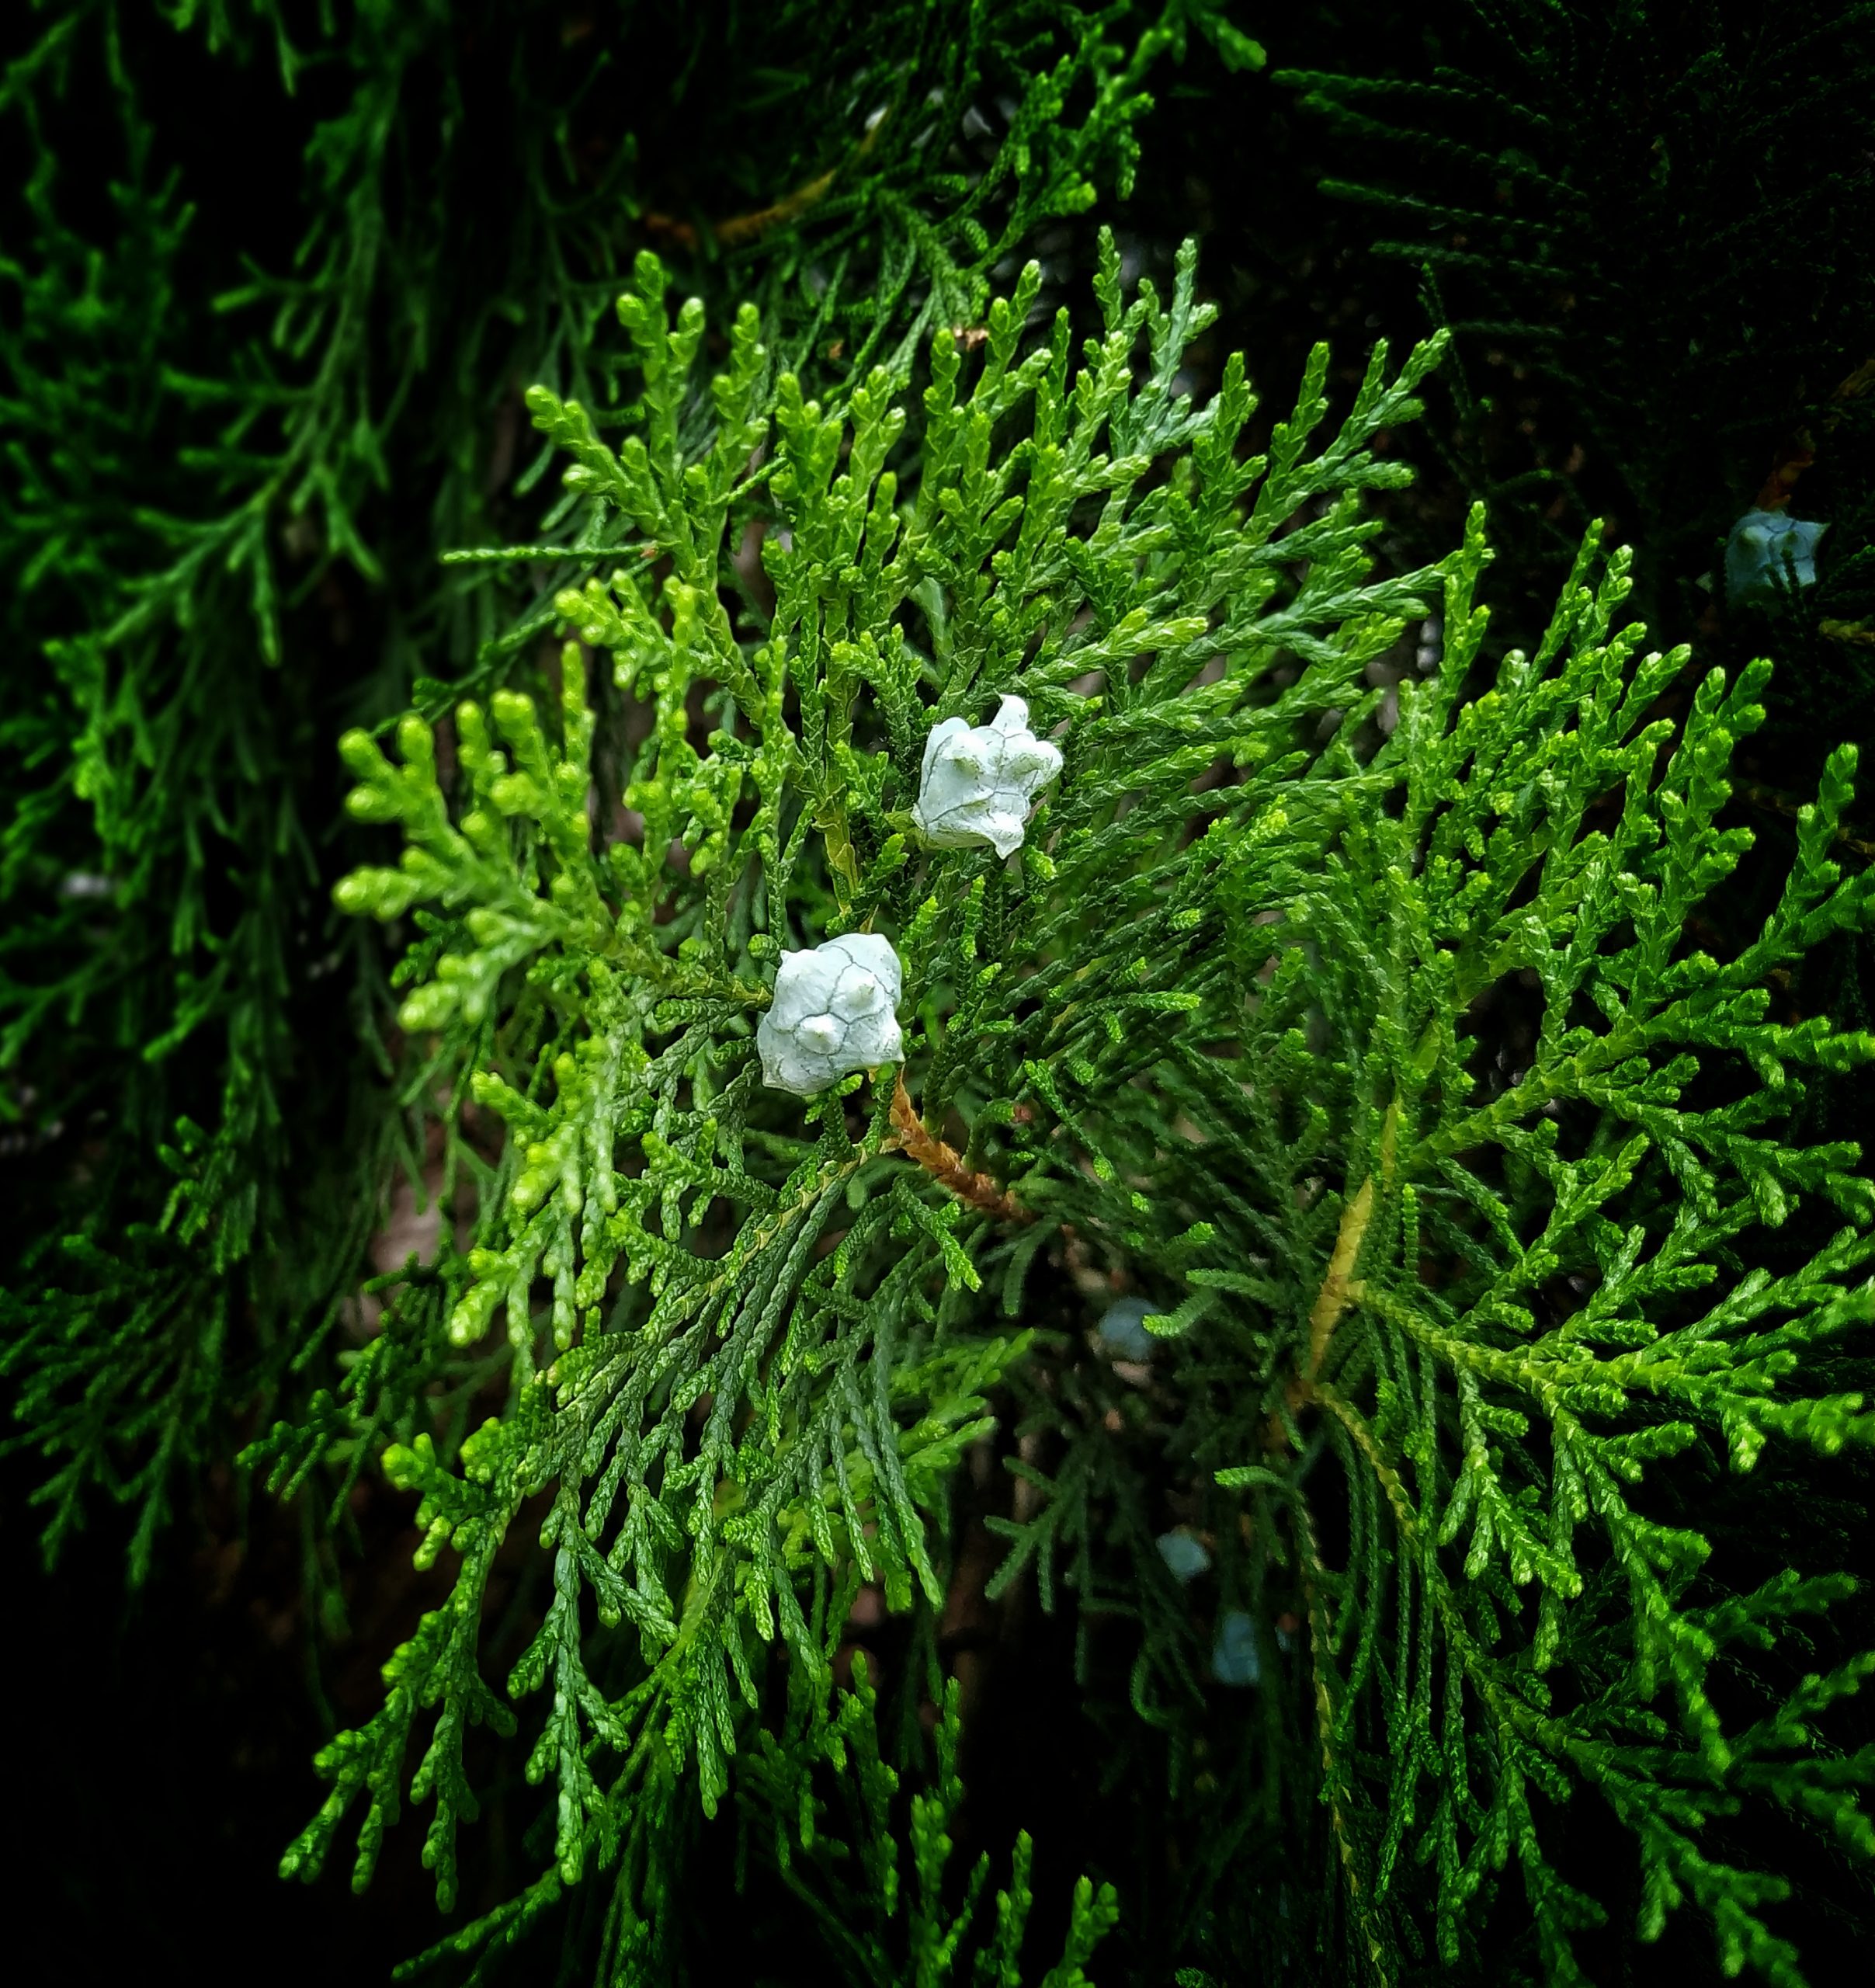 A unique plant